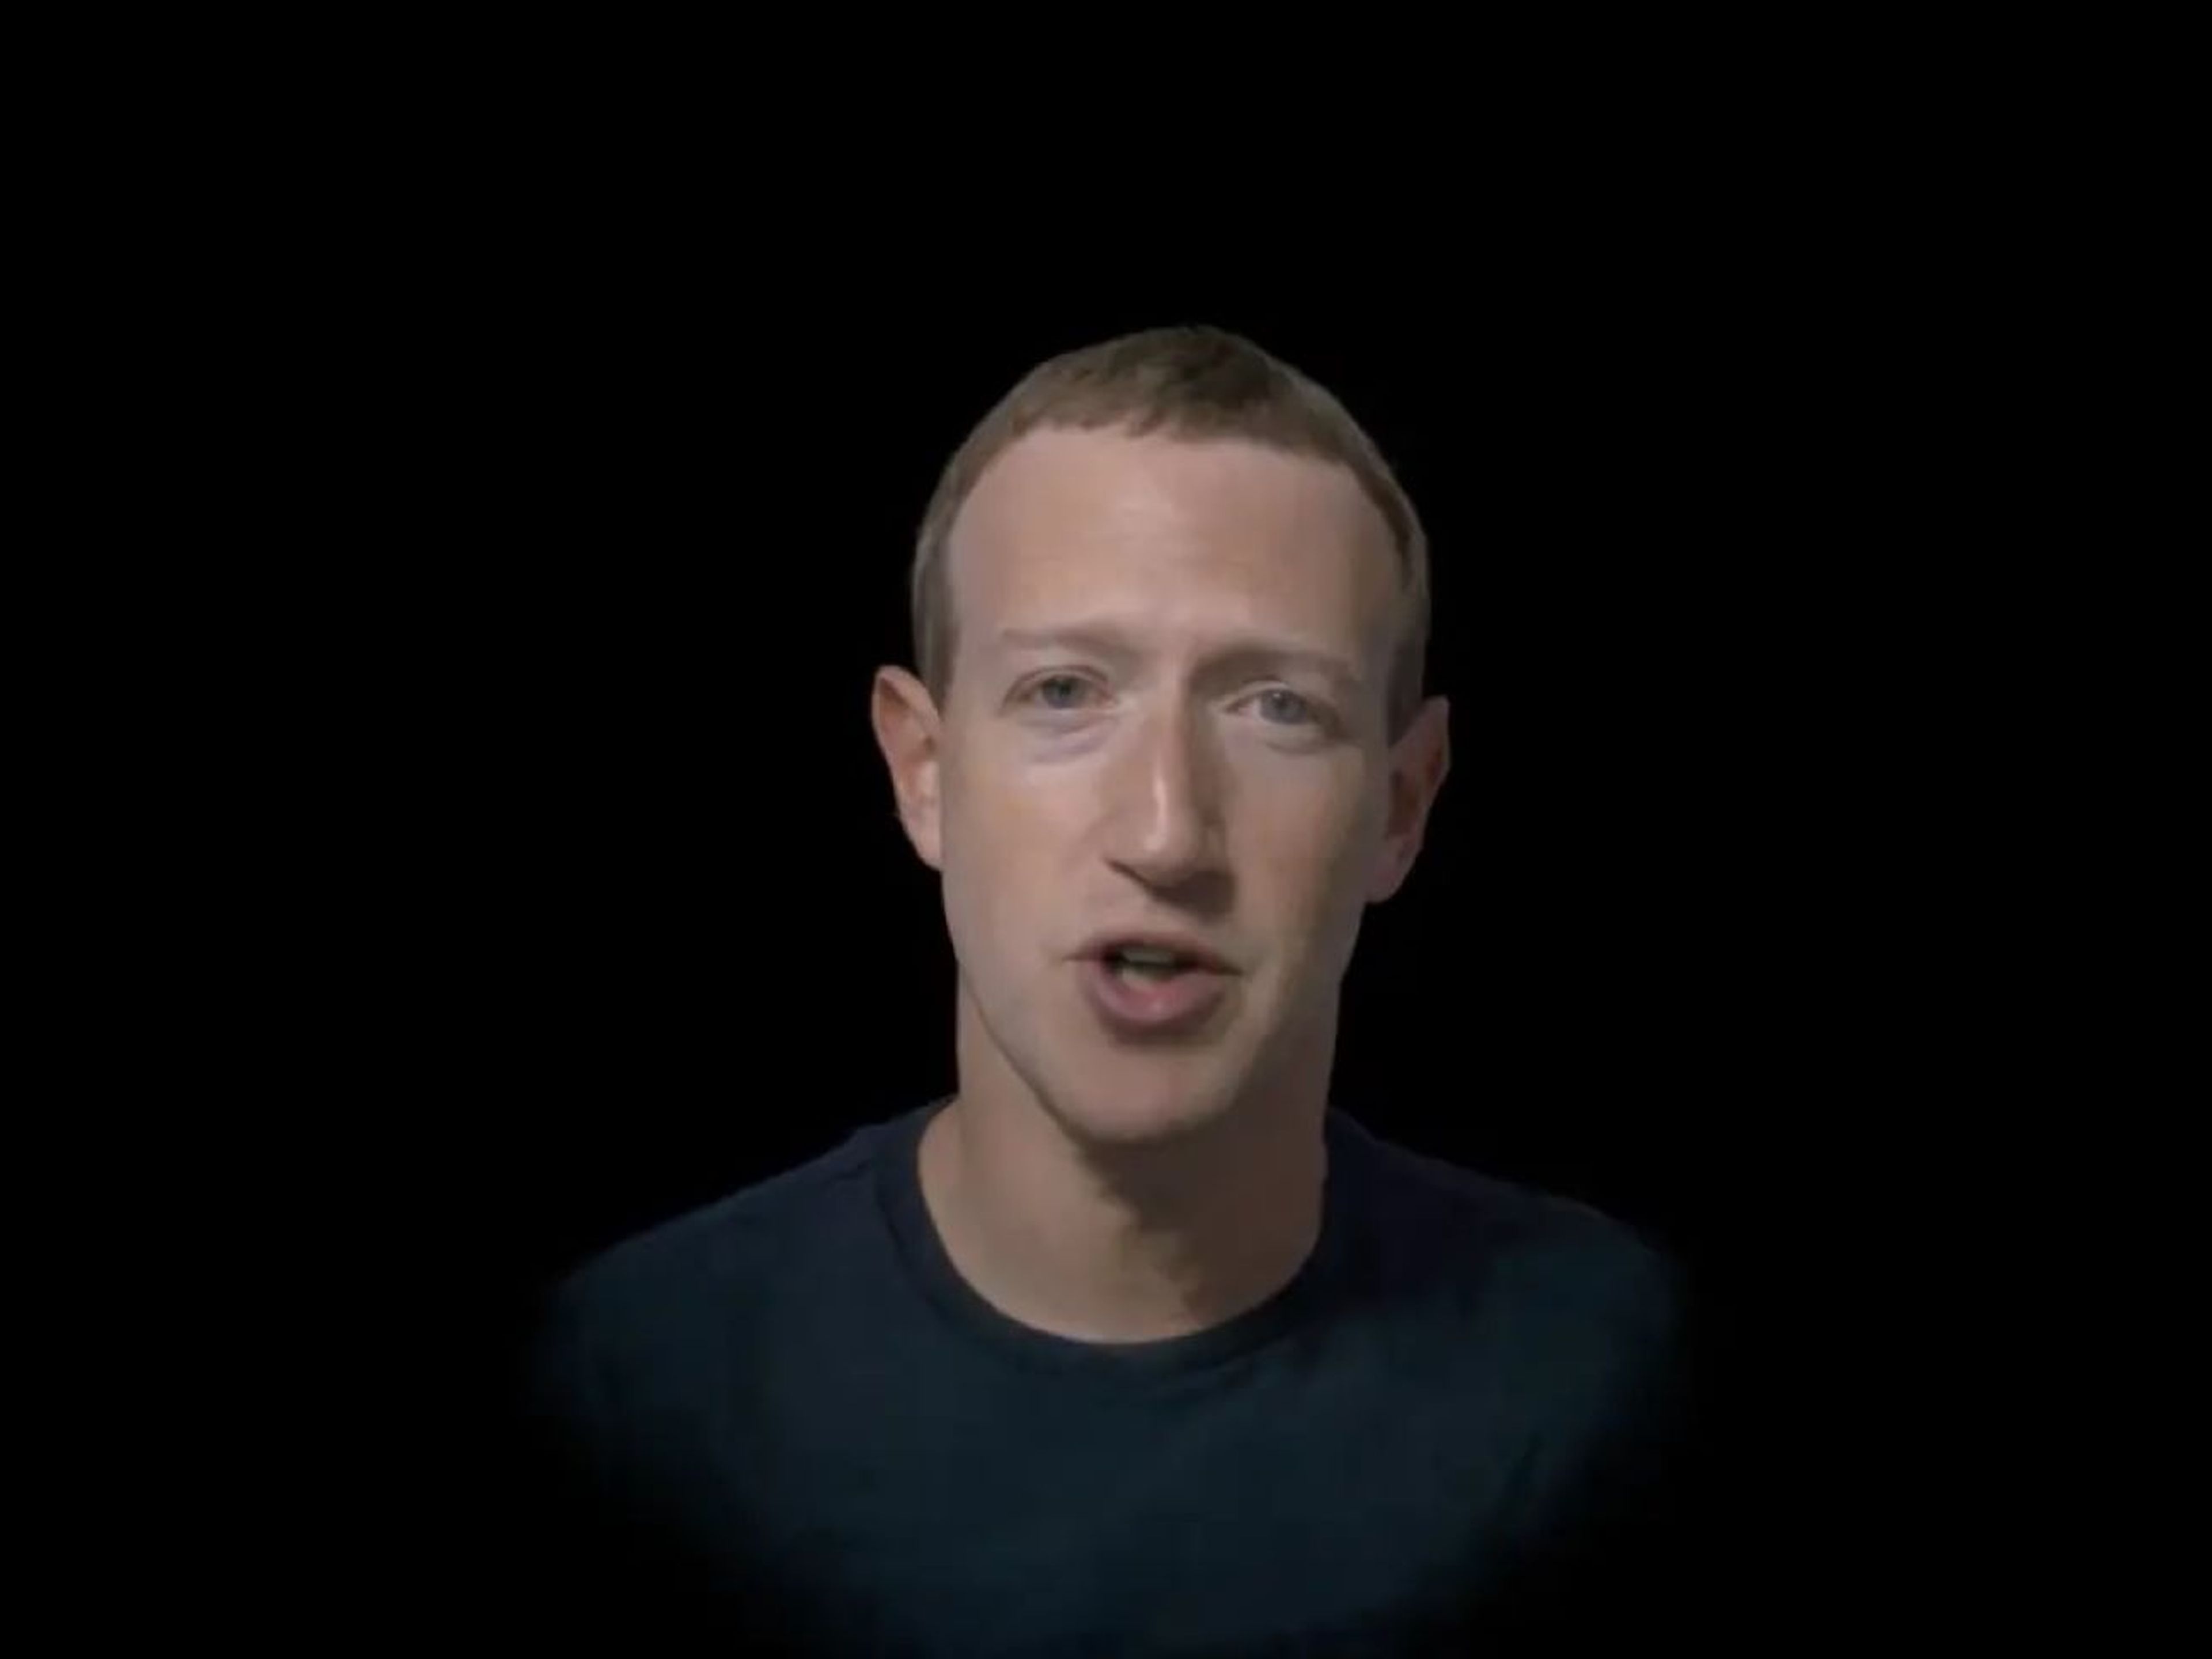 Mark Zuckerberg, mostrando un avatar fotorrealista inédito durante el Connect 2022.